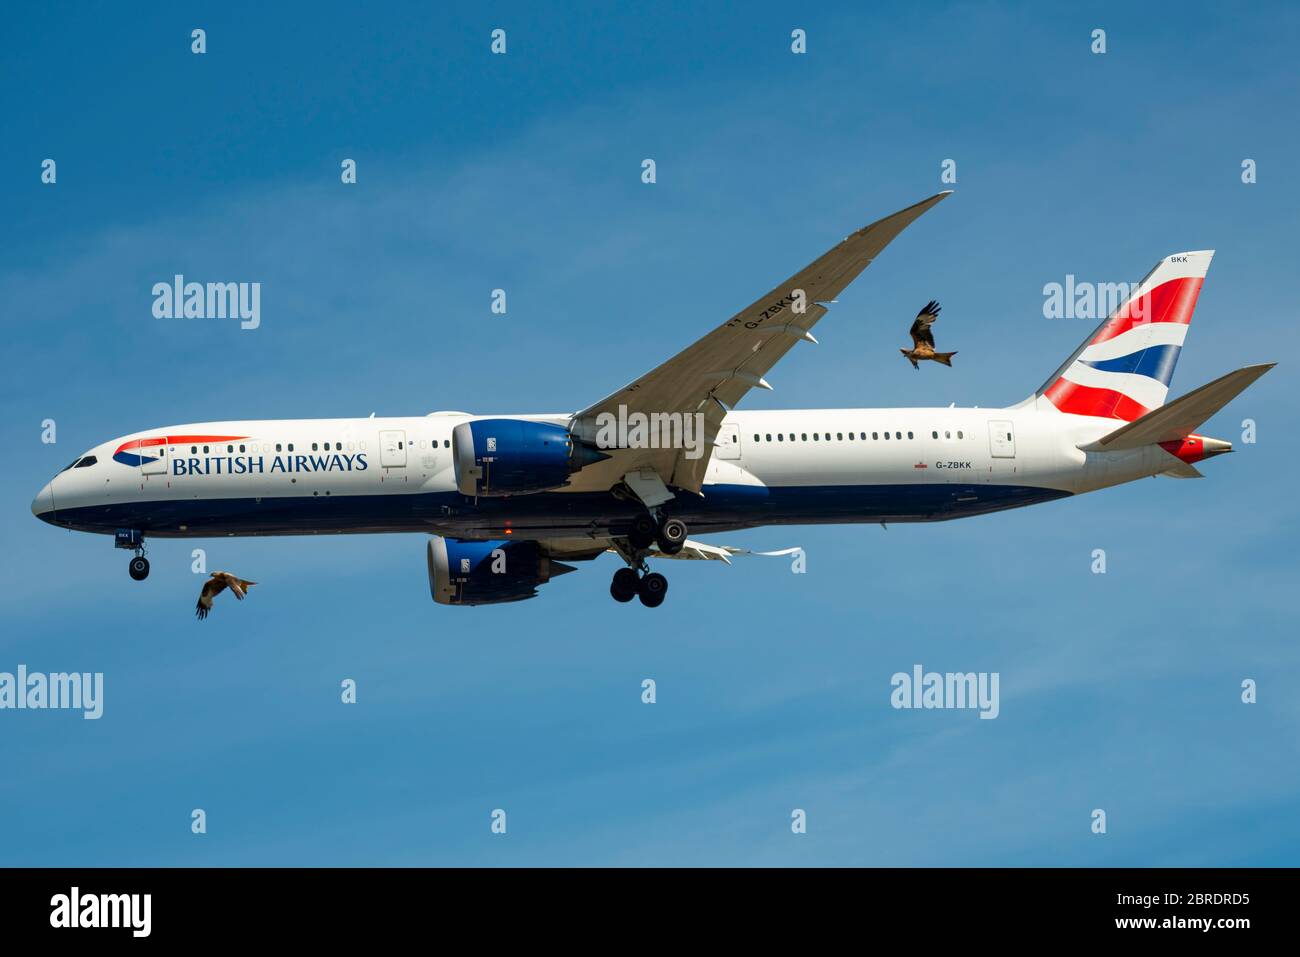 British Airways Boeing 787 Dreamliner avion de ligne de train à réaction atterrissage à l'aéroport de Londres Heathrow au-dessus de Cranford, Londres, Royaume-Uni avec de gros oiseaux, risque de dommages Banque D'Images